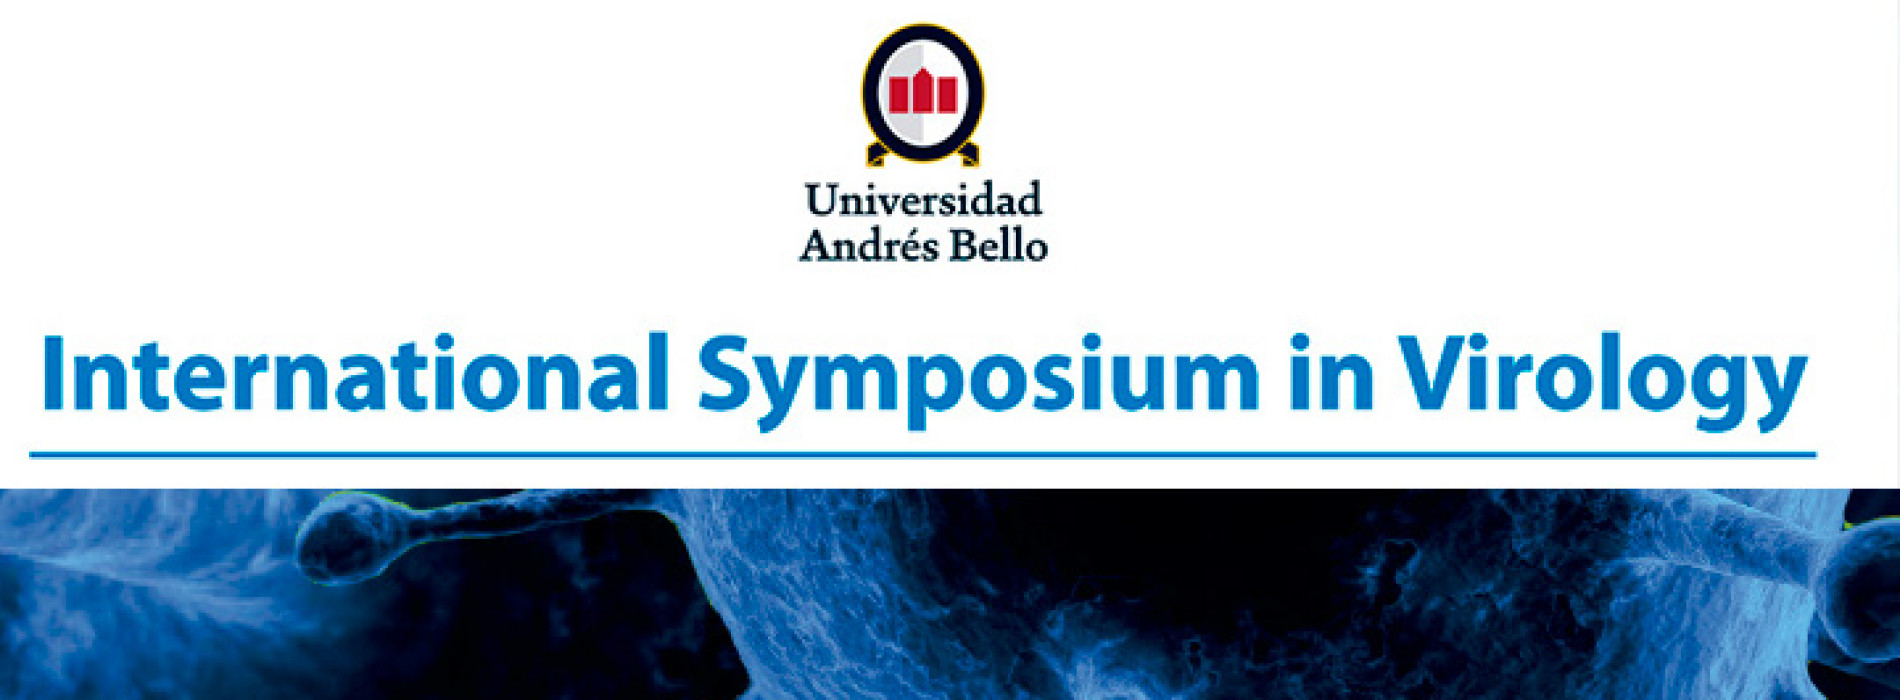 International Symposium in Virology